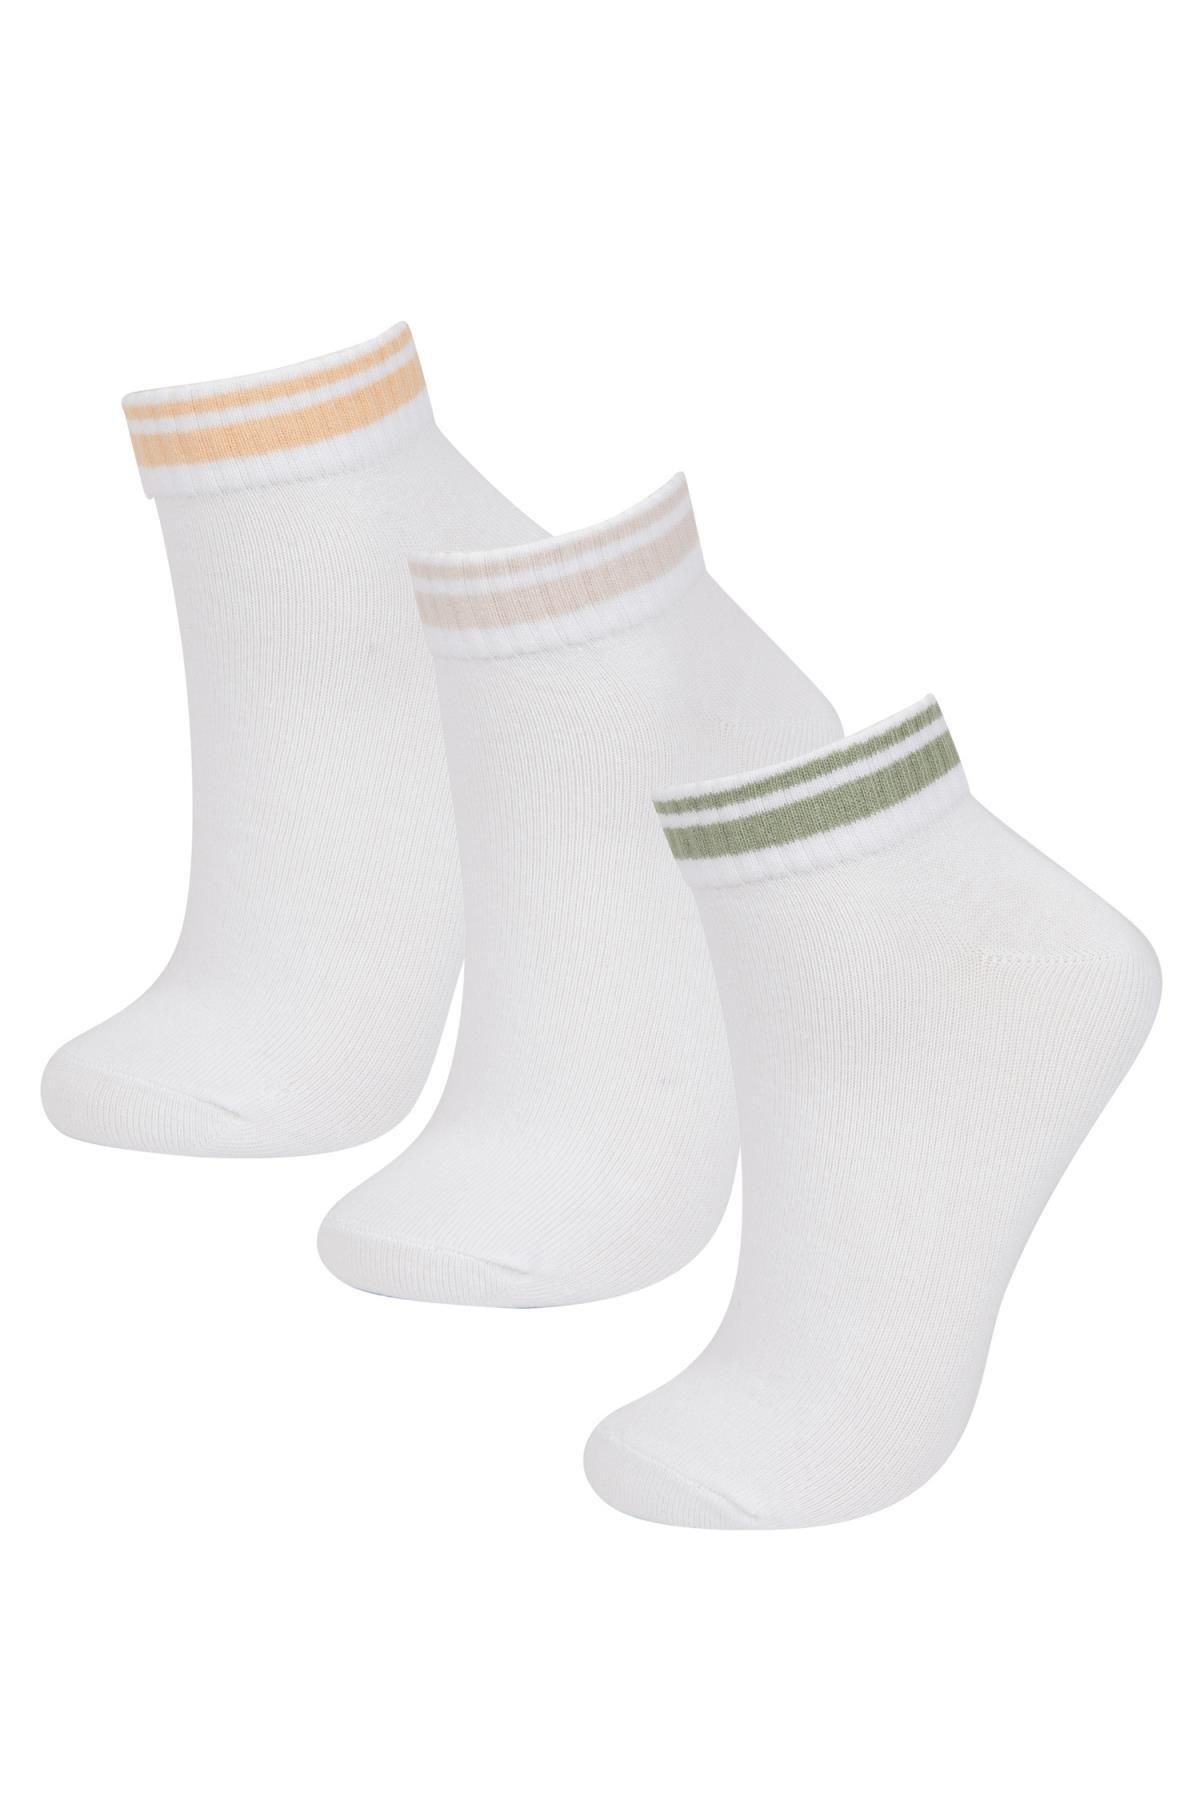 Defacto Kadın 3'lü Pamuklu Patik Çorap B6029axns